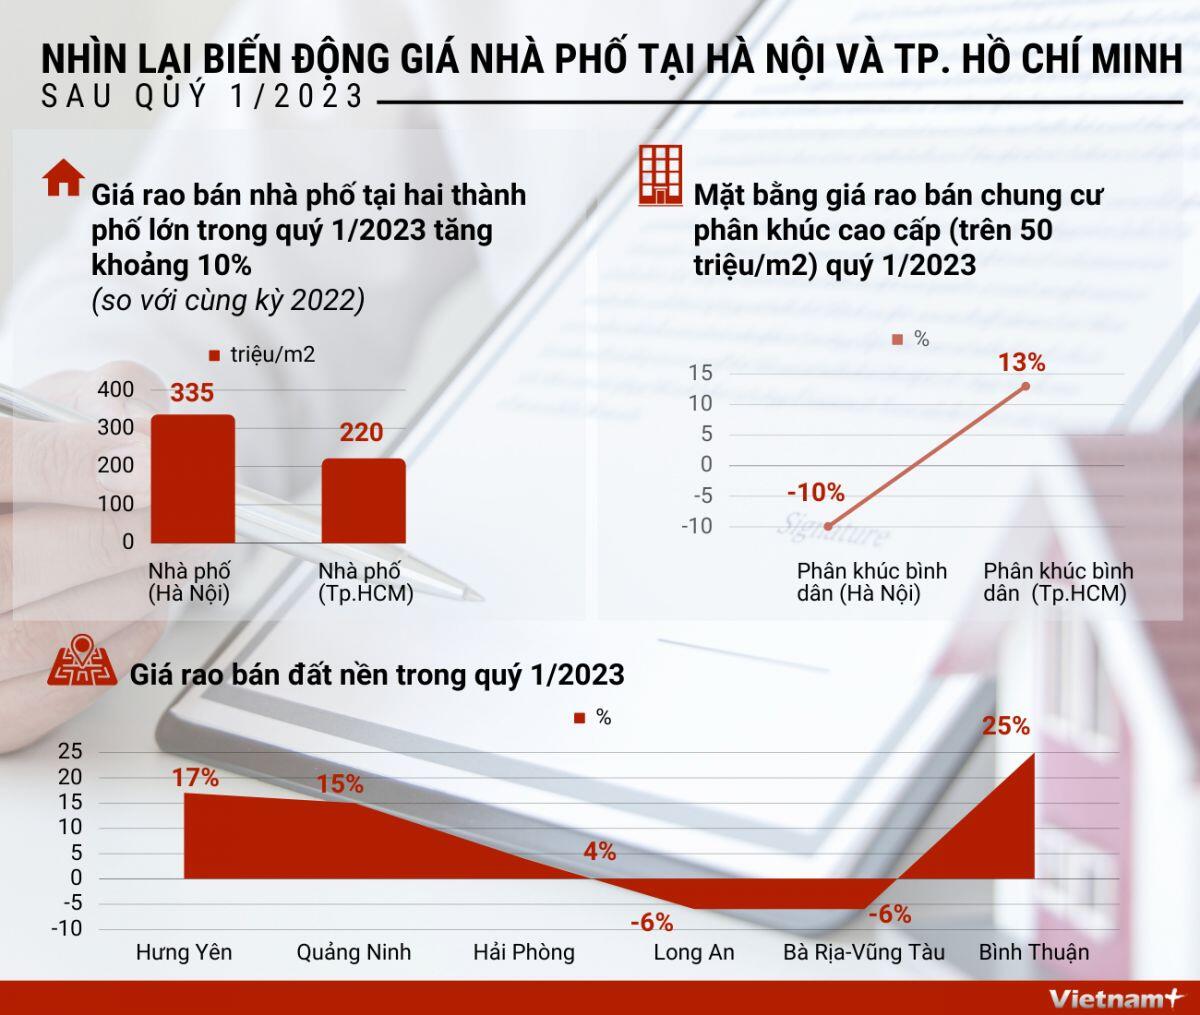 Biến động giá nhà phố tại Hà Nội và TP.Hồ Chí Minh sau quý 1/2023